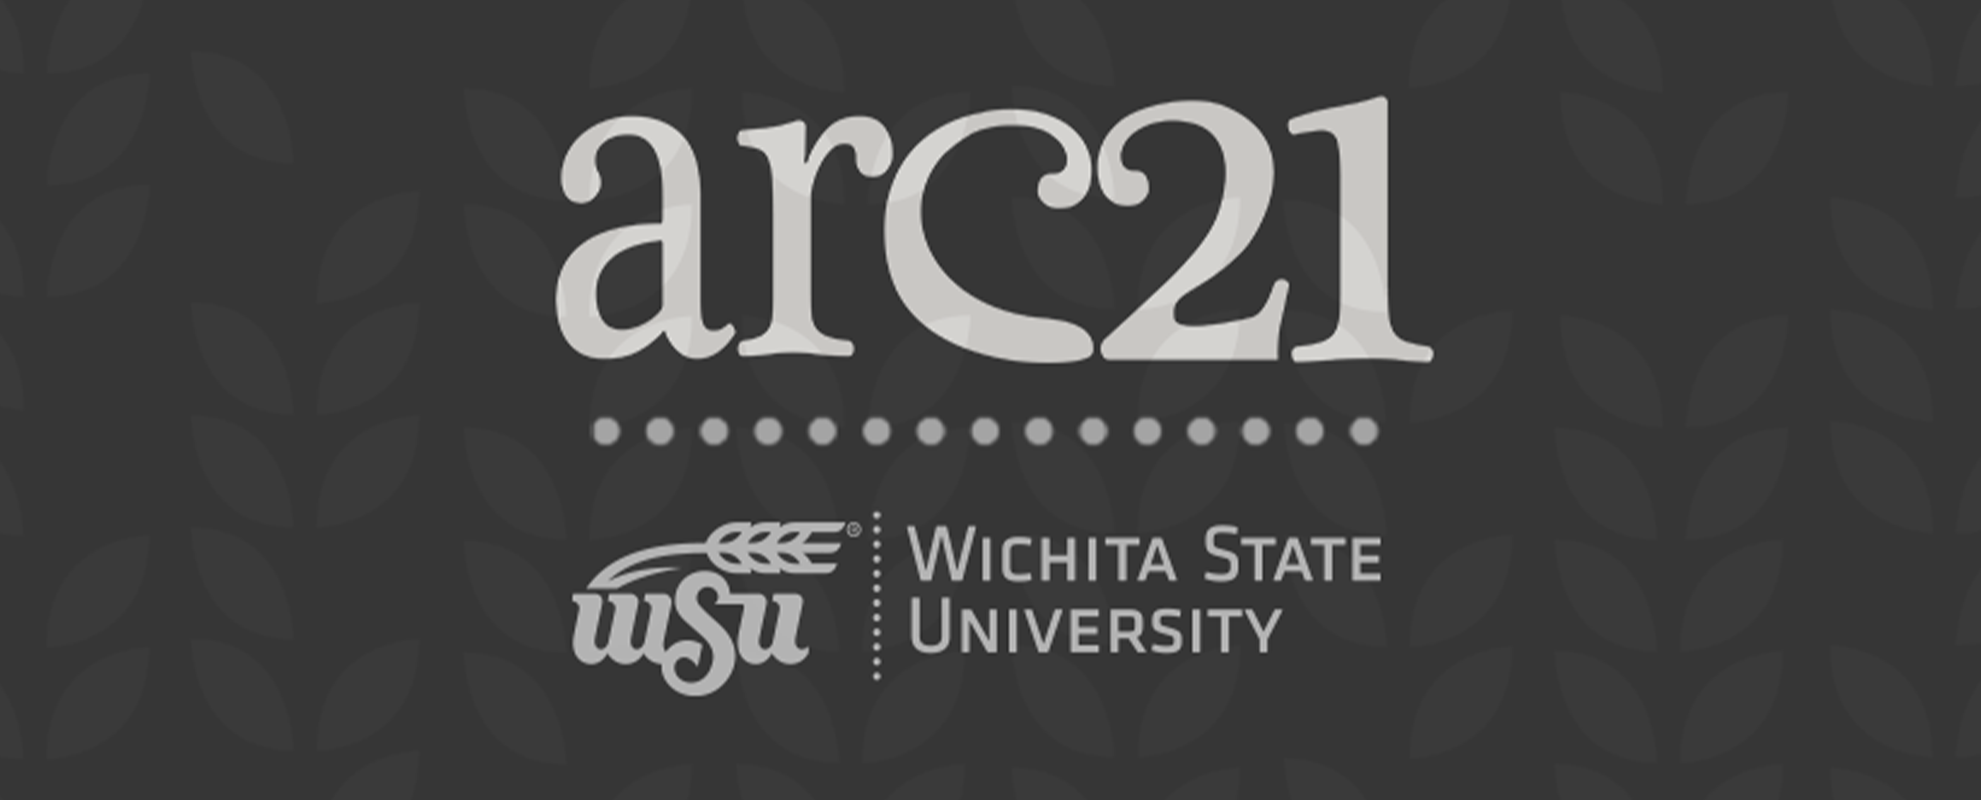 ARC21 Wichita State University